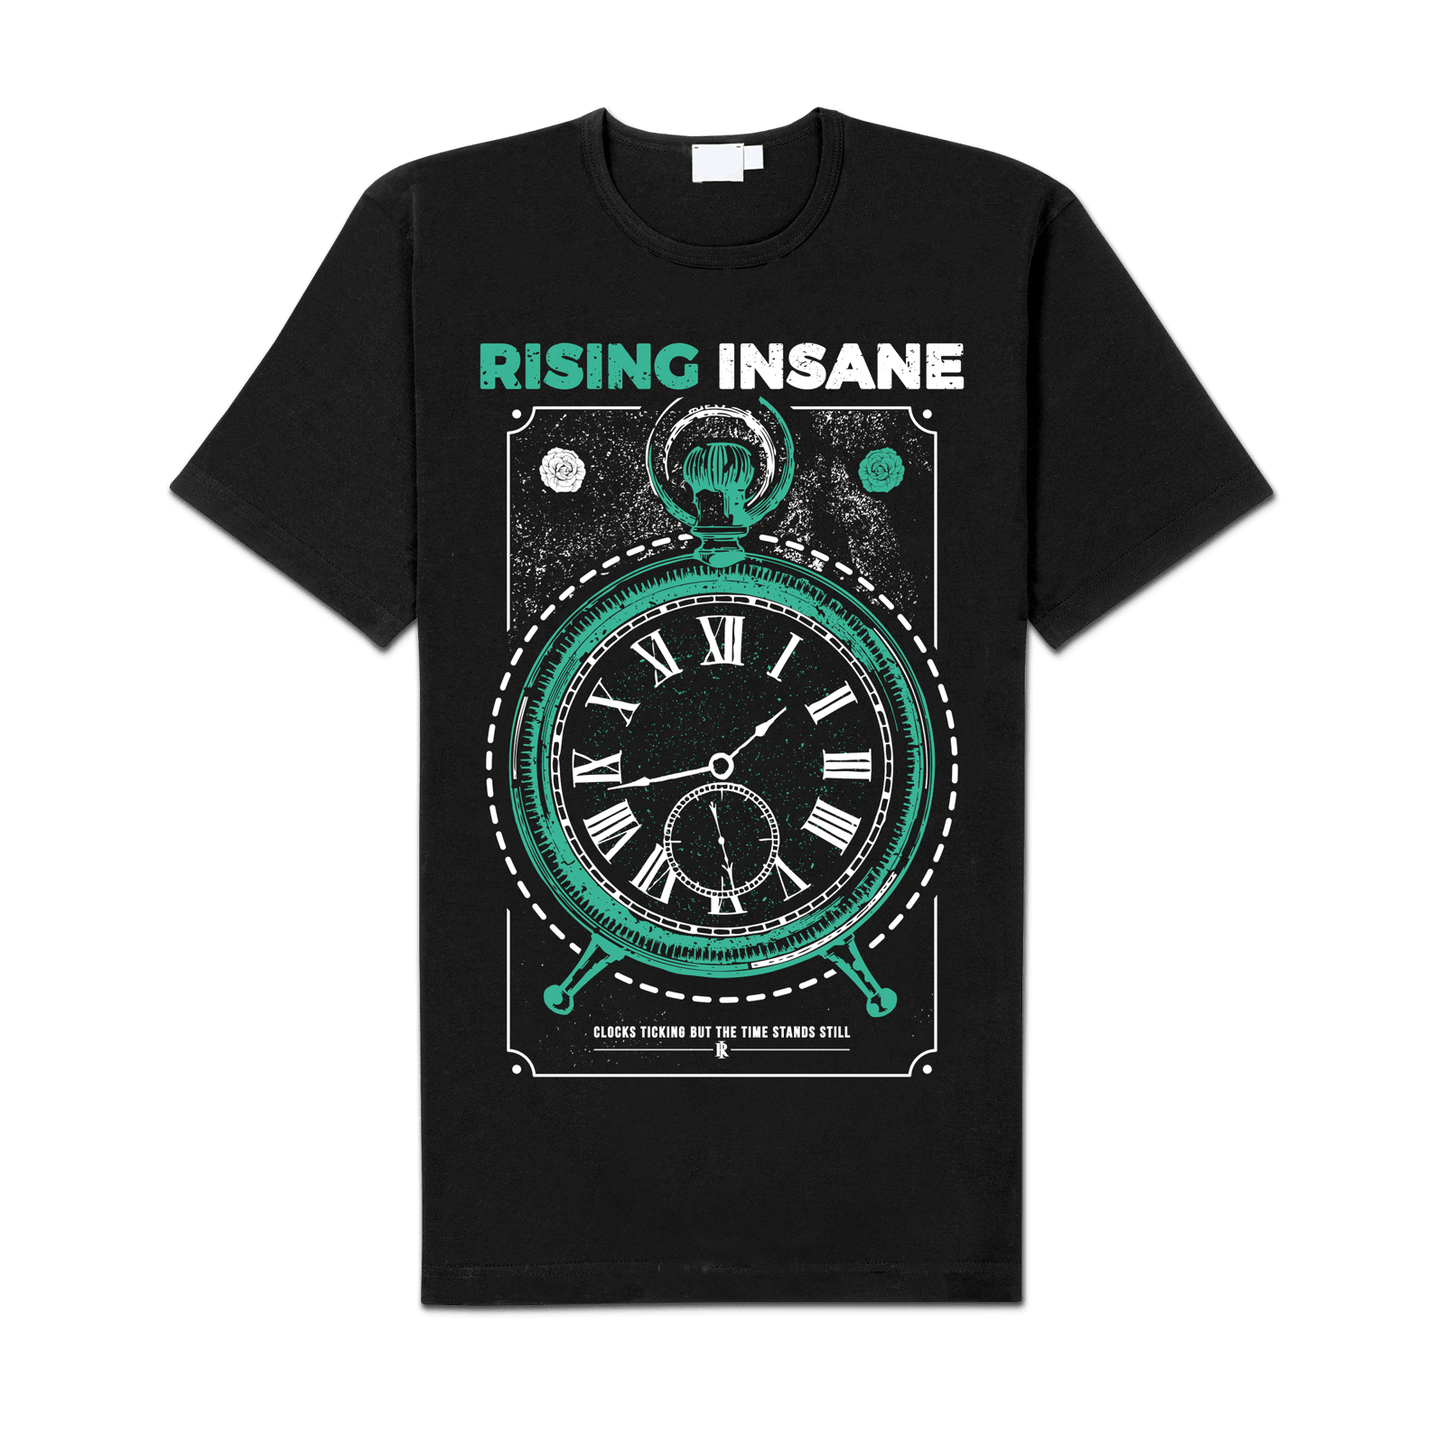 Rising Insane "Clock" Shirt